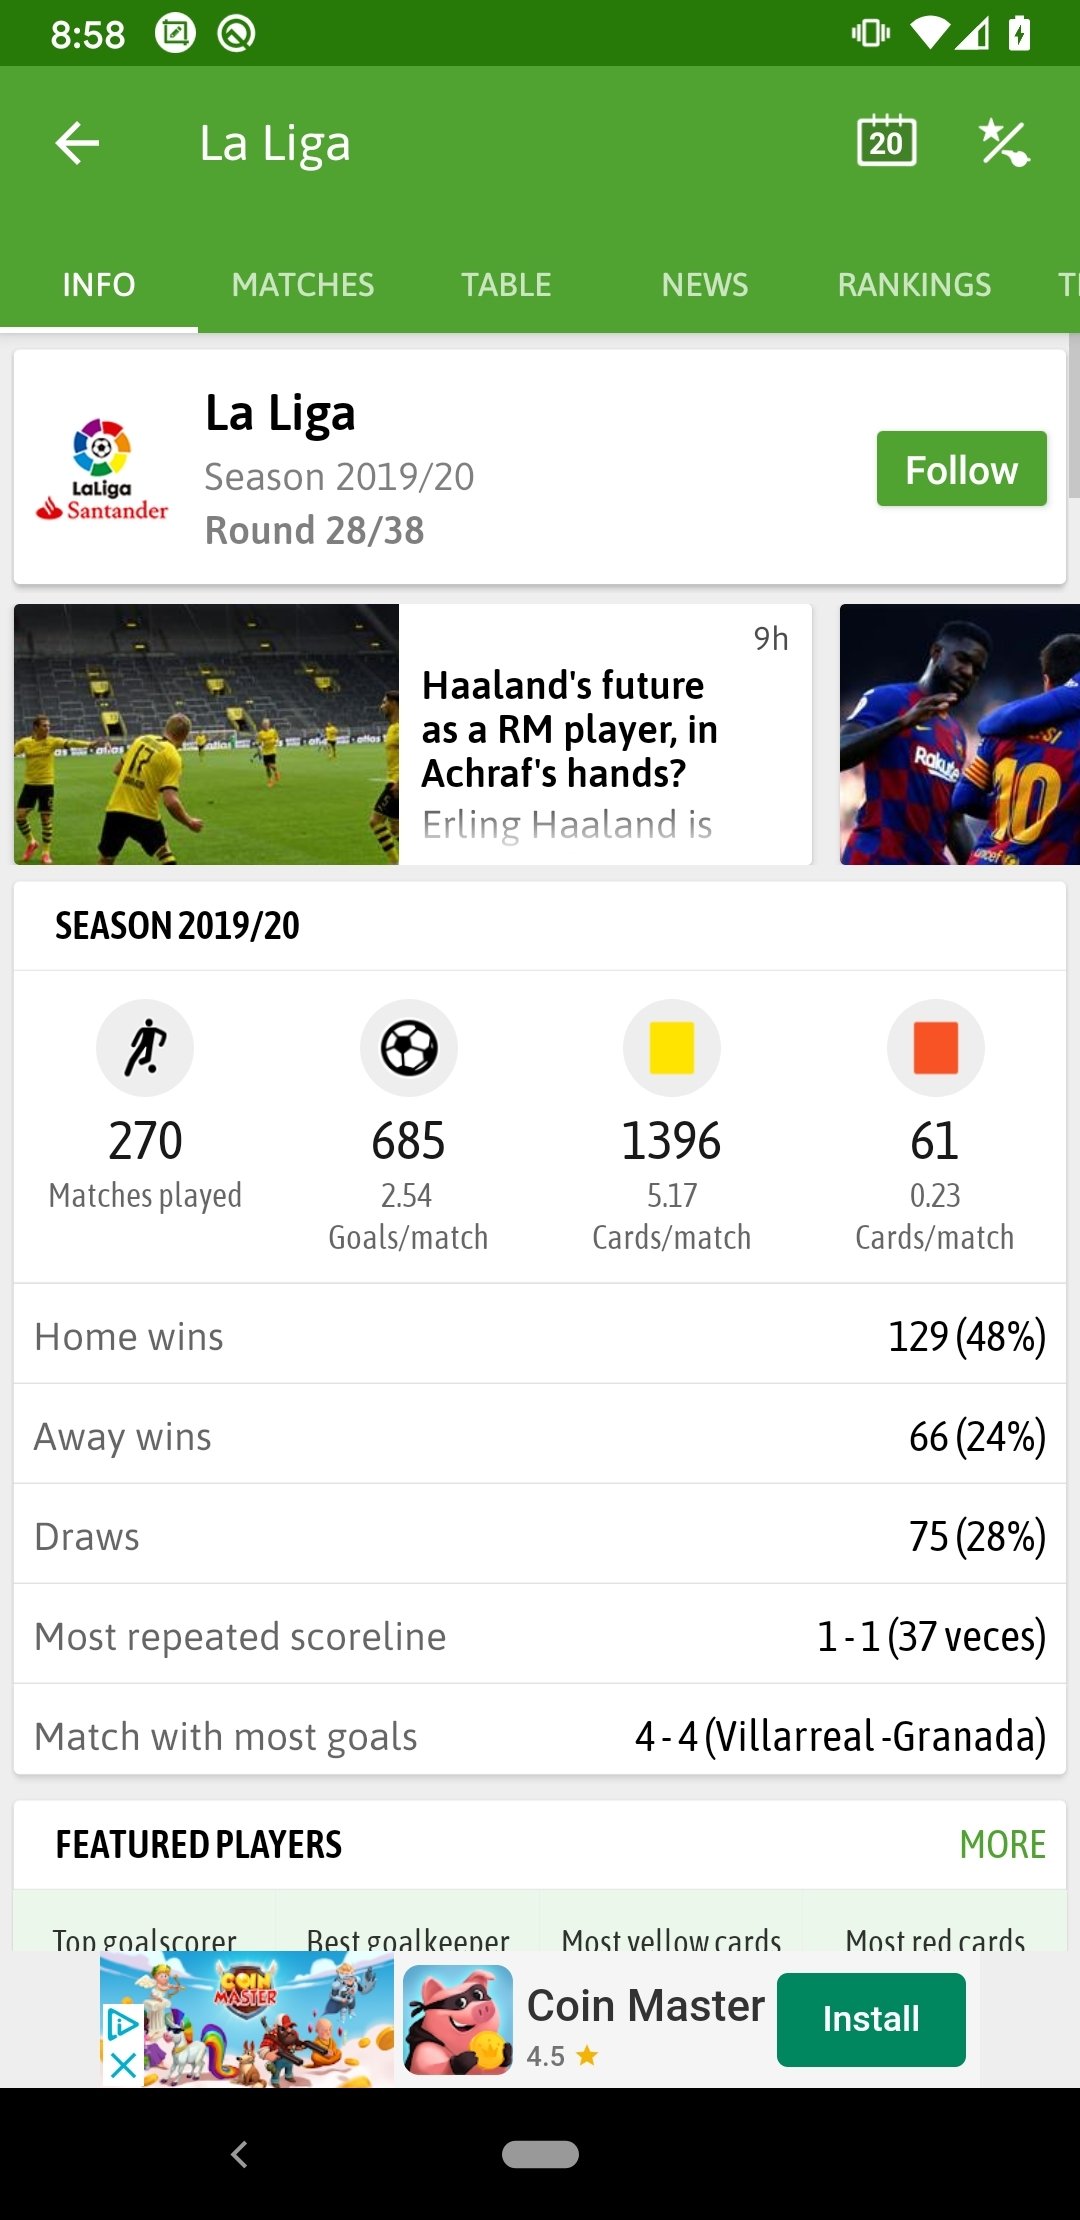 Baixar Previsões de Futebol 2.3 Android - Download APK Grátis